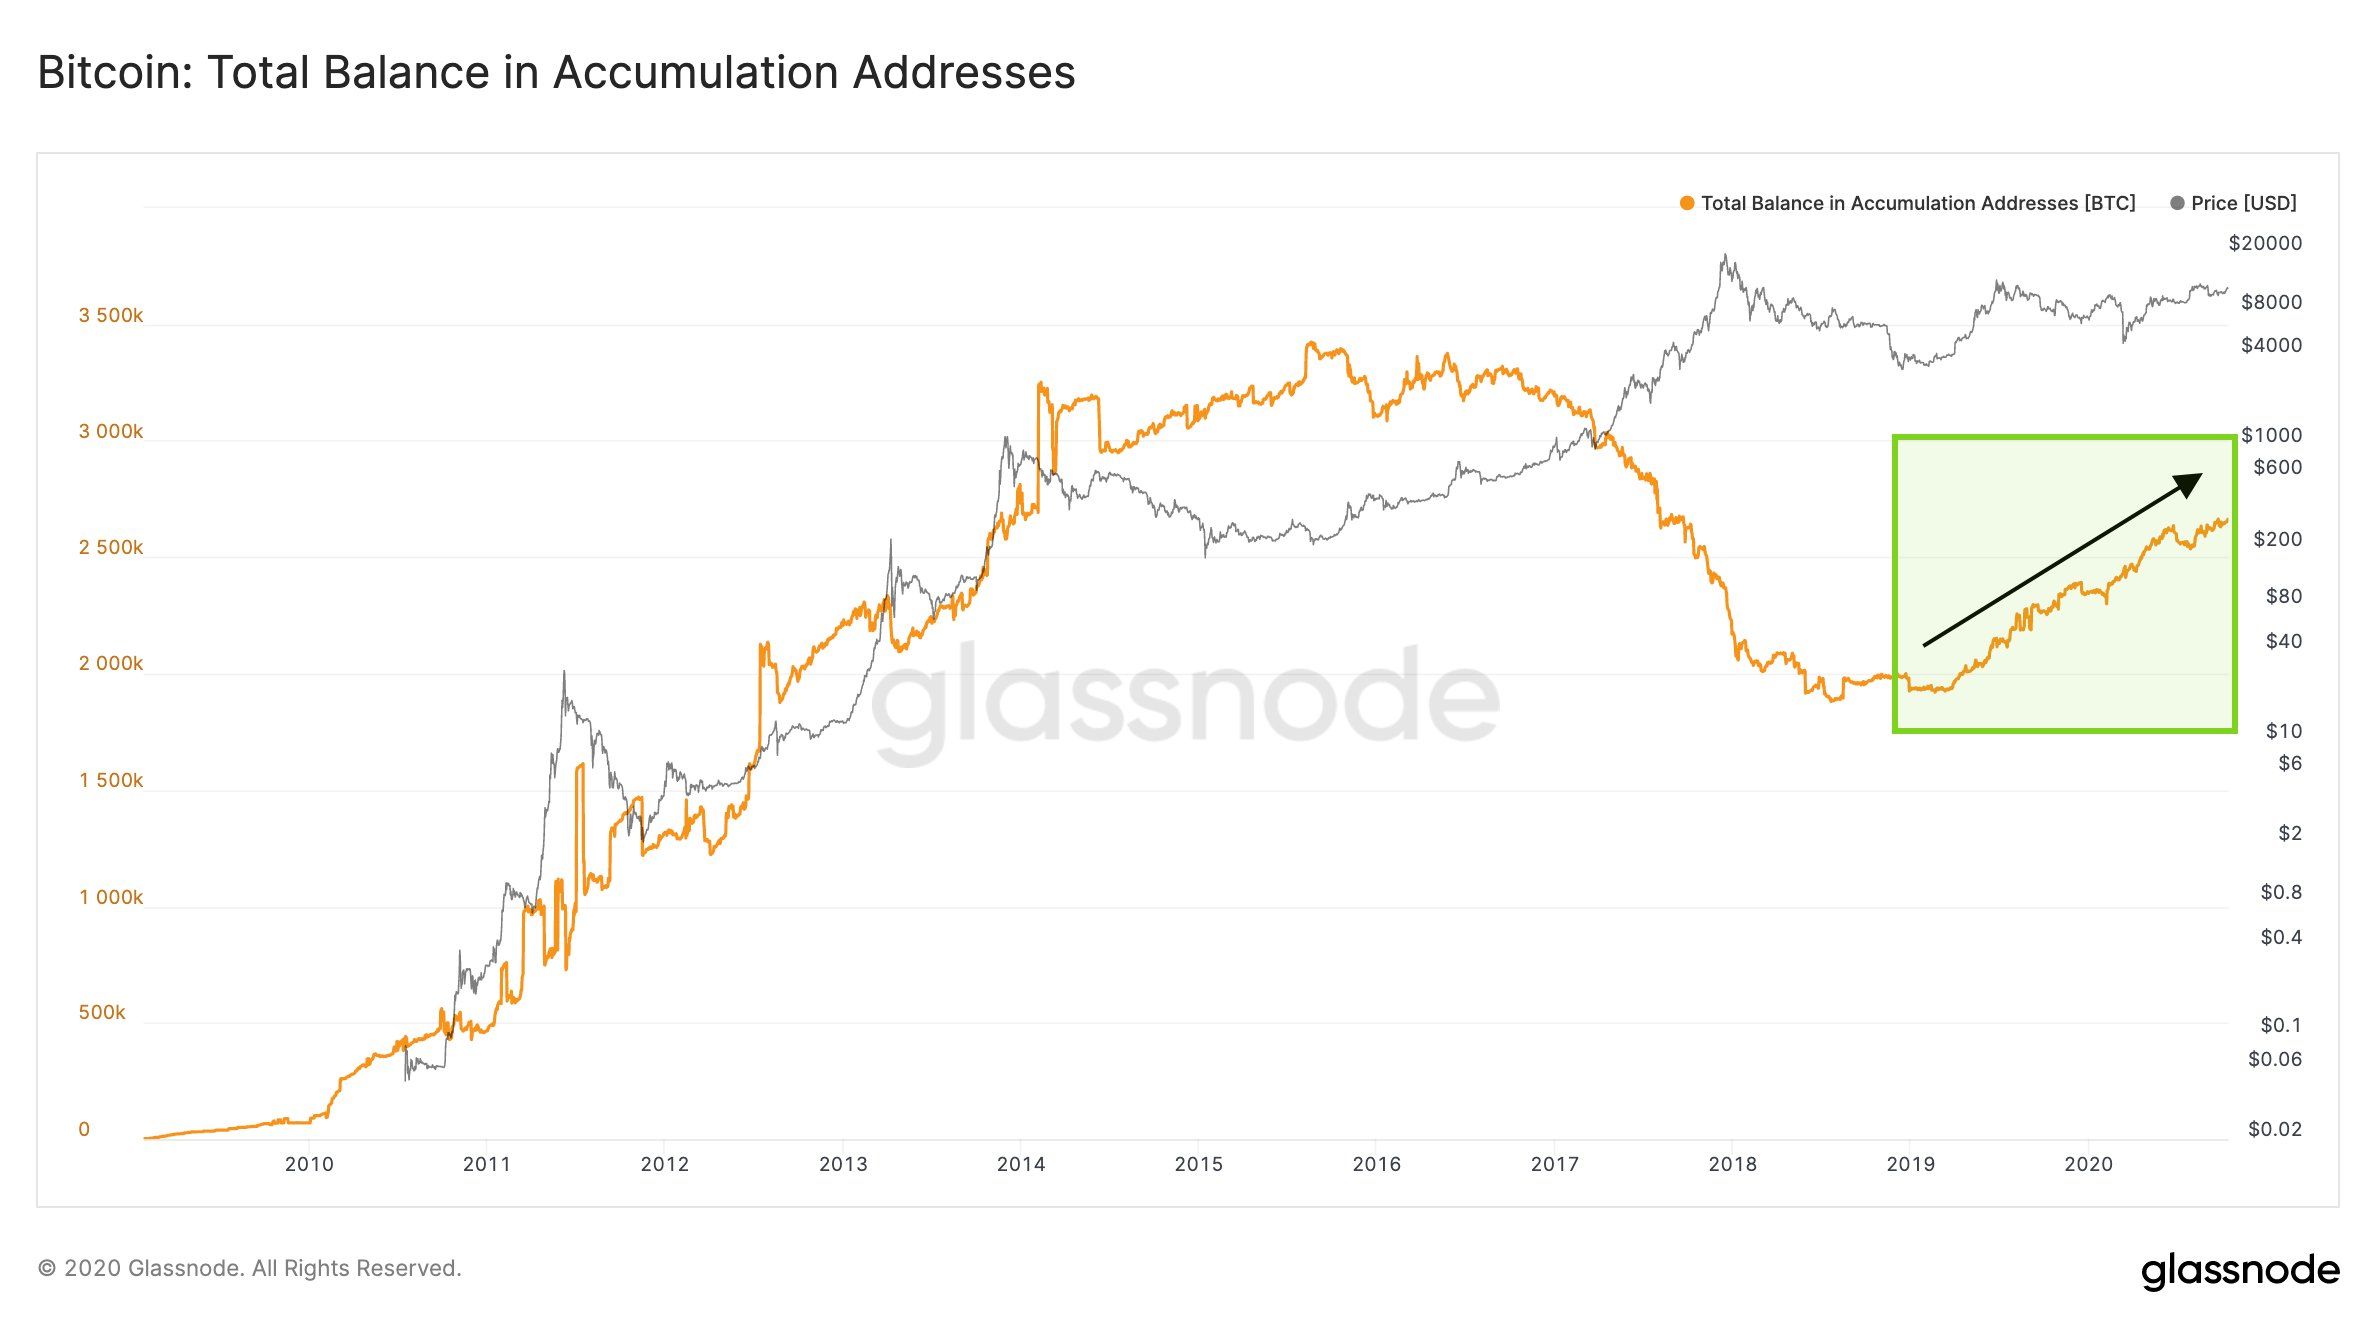 Grayscale quý 3/2020: thu hút hơn 1 tỷ USD, phần lớn đầu tư vào Bitcoin